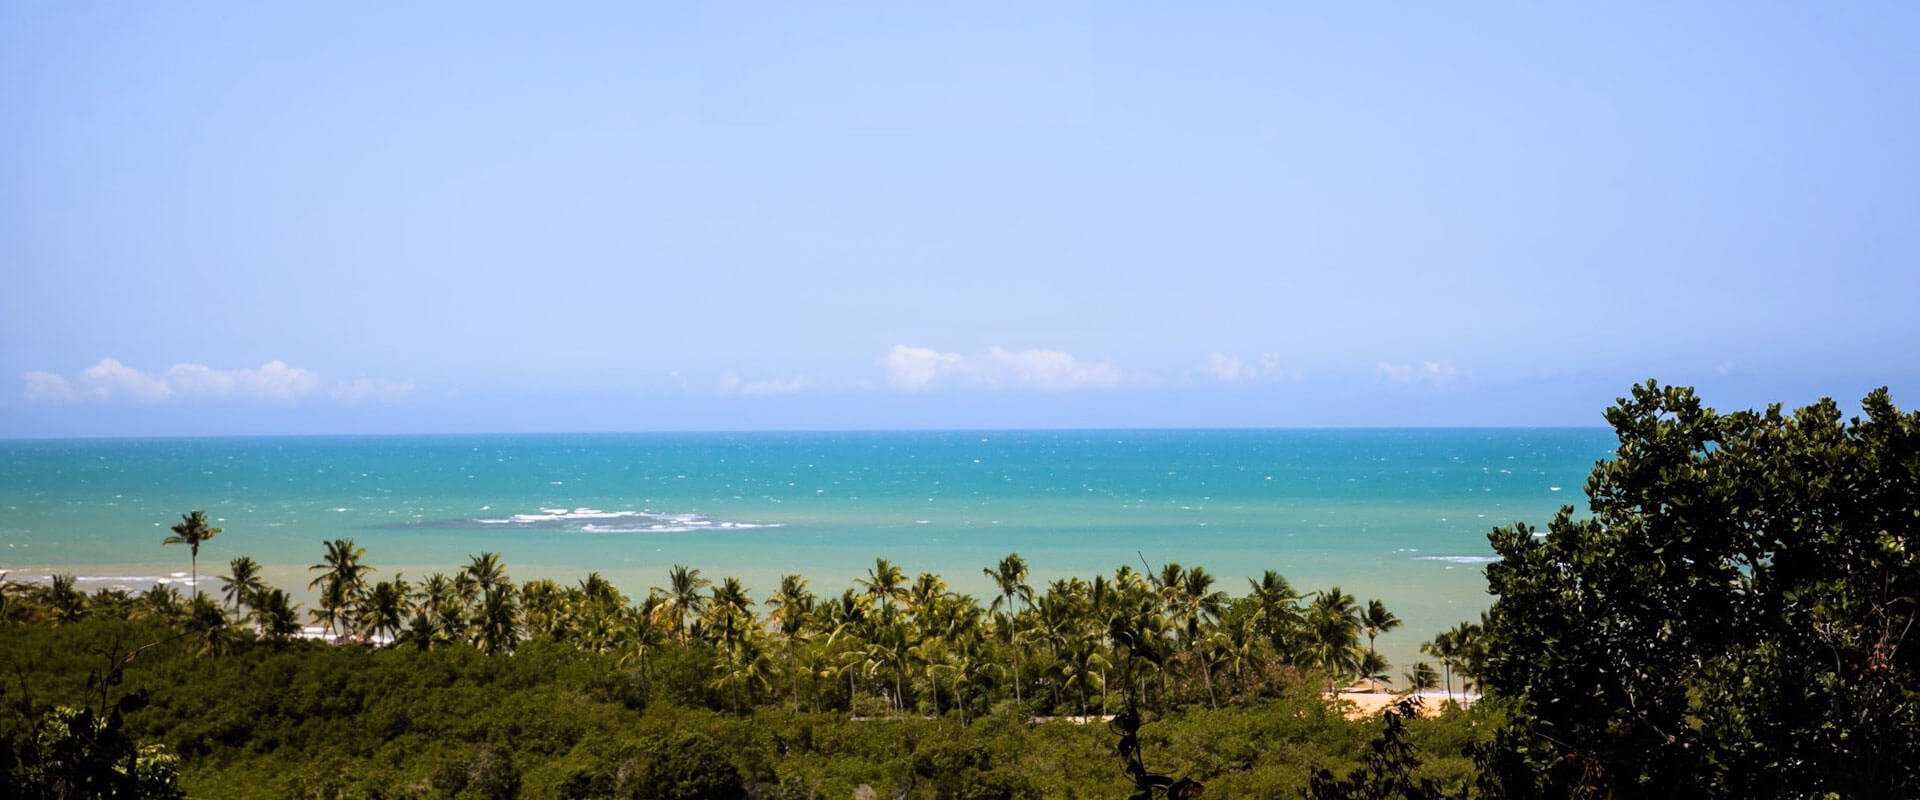 Mar Azul Turquesa ao Fundo, praia e coqueiros